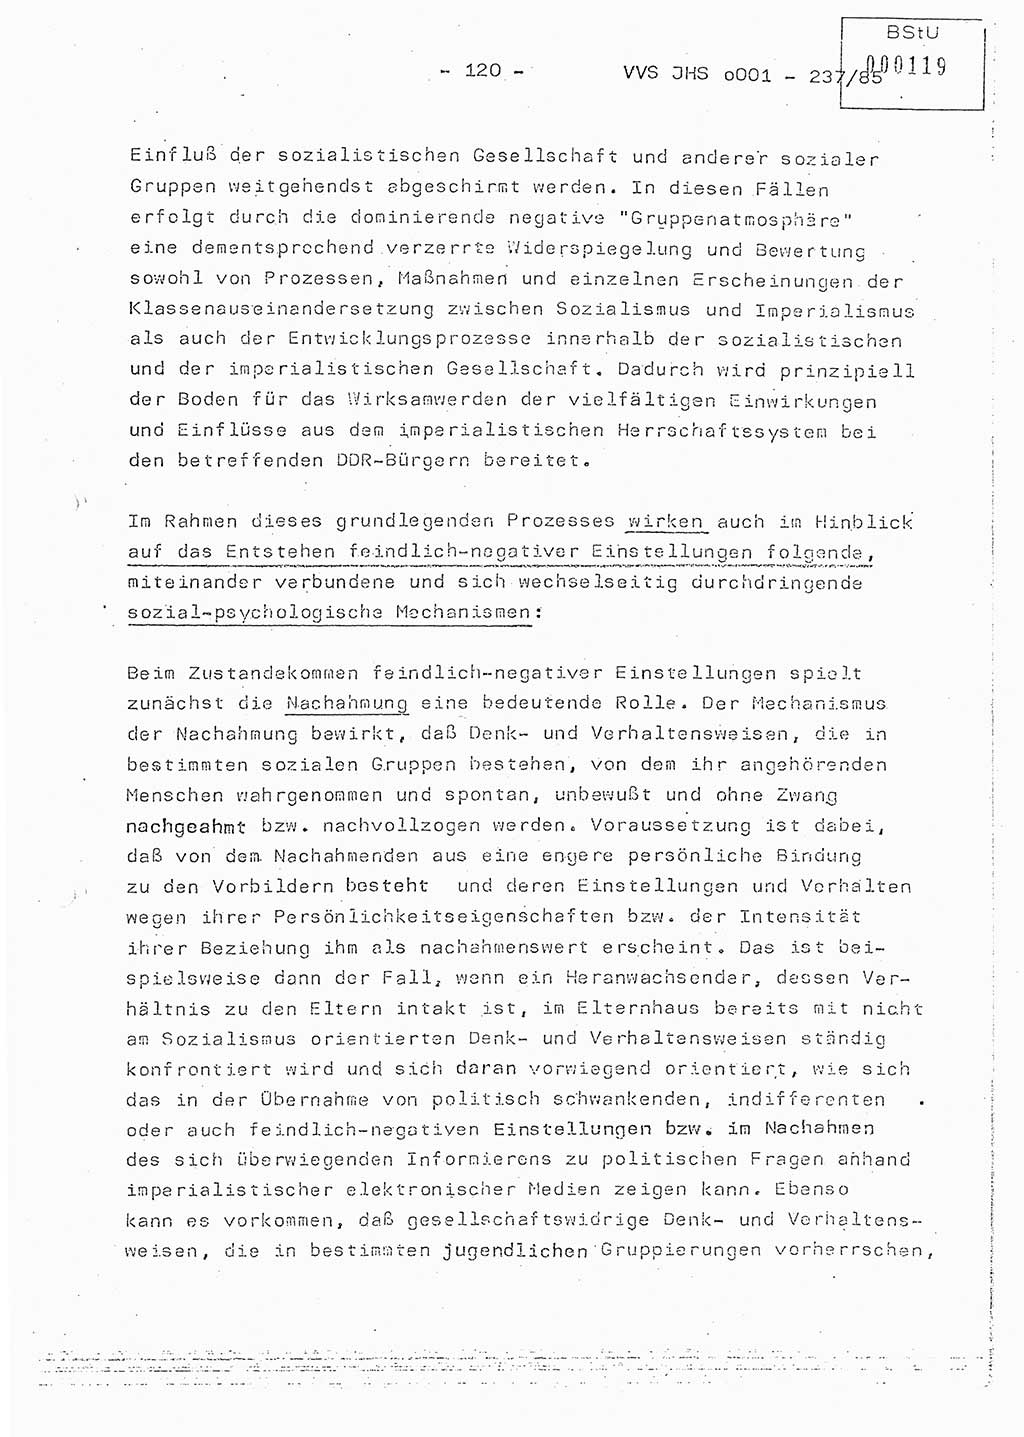 Dissertation Oberstleutnant Peter Jakulski (JHS), Oberstleutnat Christian Rudolph (HA Ⅸ), Major Horst Böttger (ZMD), Major Wolfgang Grüneberg (JHS), Major Albert Meutsch (JHS), Ministerium für Staatssicherheit (MfS) [Deutsche Demokratische Republik (DDR)], Juristische Hochschule (JHS), Vertrauliche Verschlußsache (VVS) o001-237/85, Potsdam 1985, Seite 120 (Diss. MfS DDR JHS VVS o001-237/85 1985, S. 120)